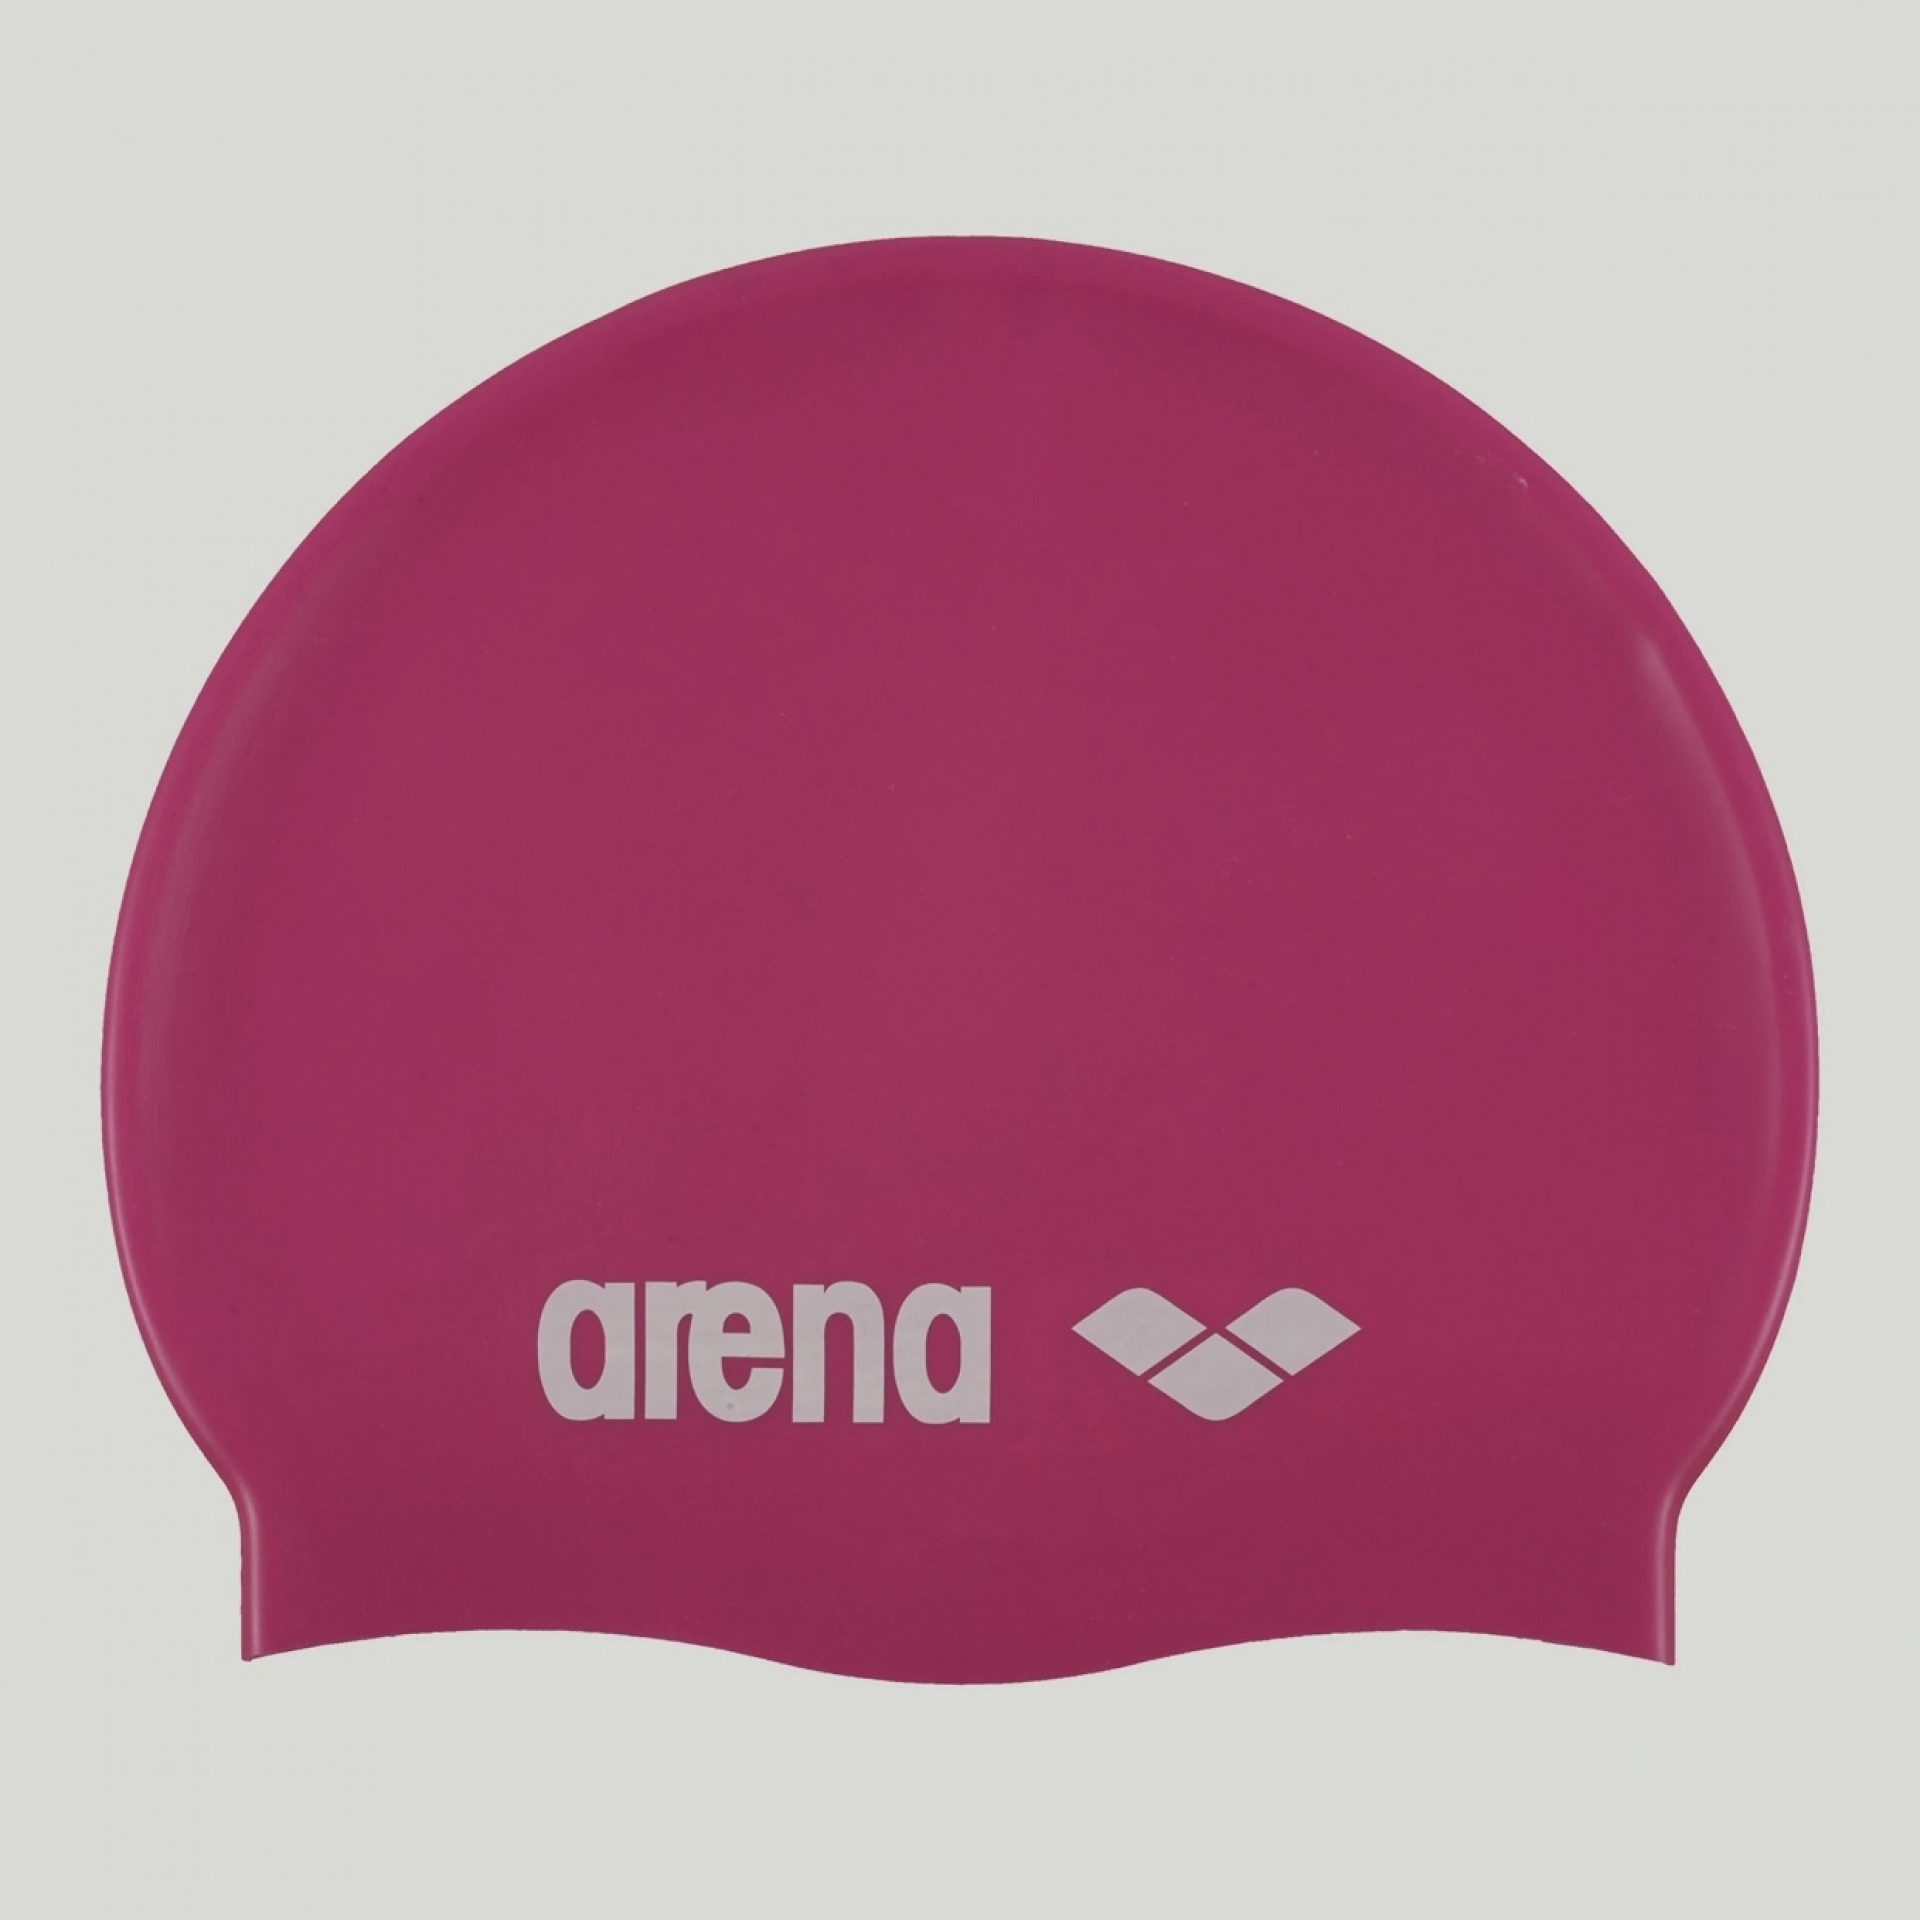 Mũ bơi Arena Classic silicone